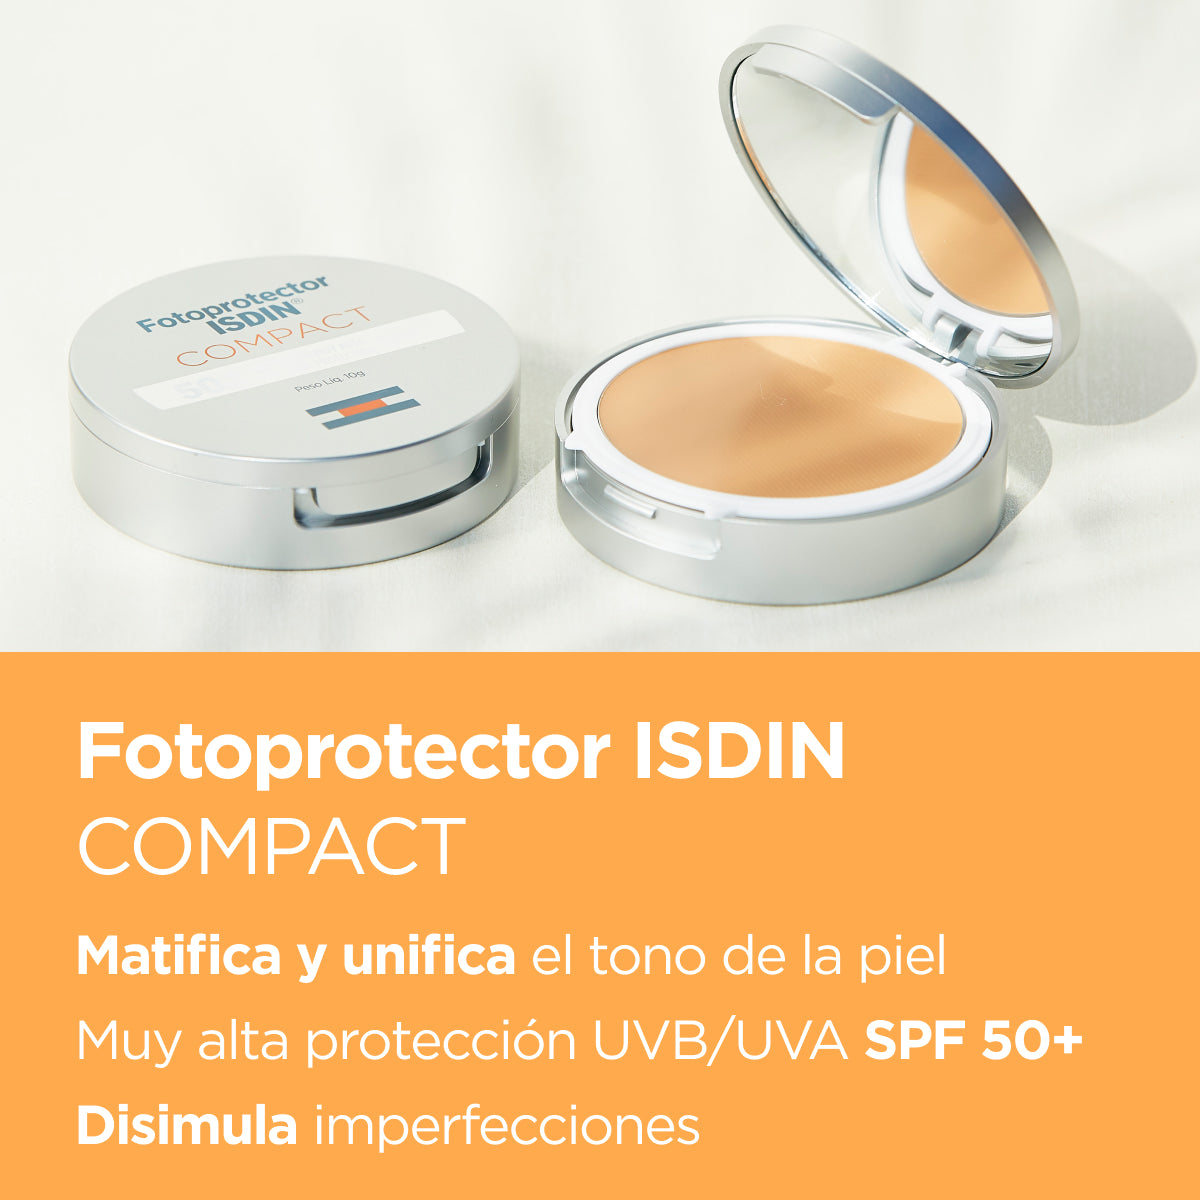 Fotoprotector Compact SPF 50 + - Maquillaje compacto con muy alta protección en dos colores